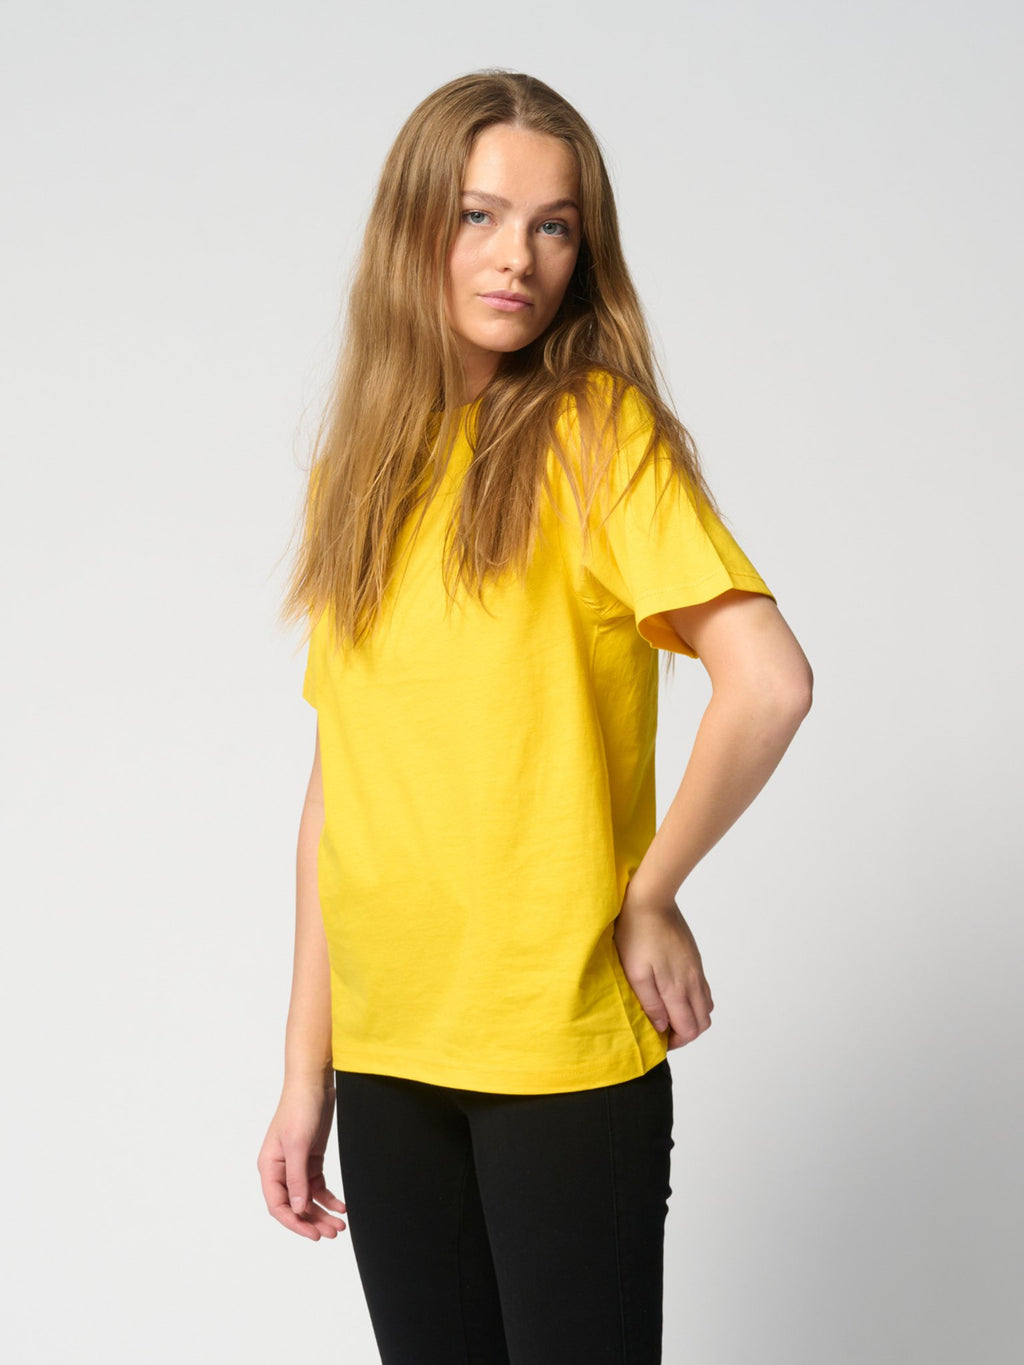 Υπερμεγέθη μπλουζάκι - κίτρινο